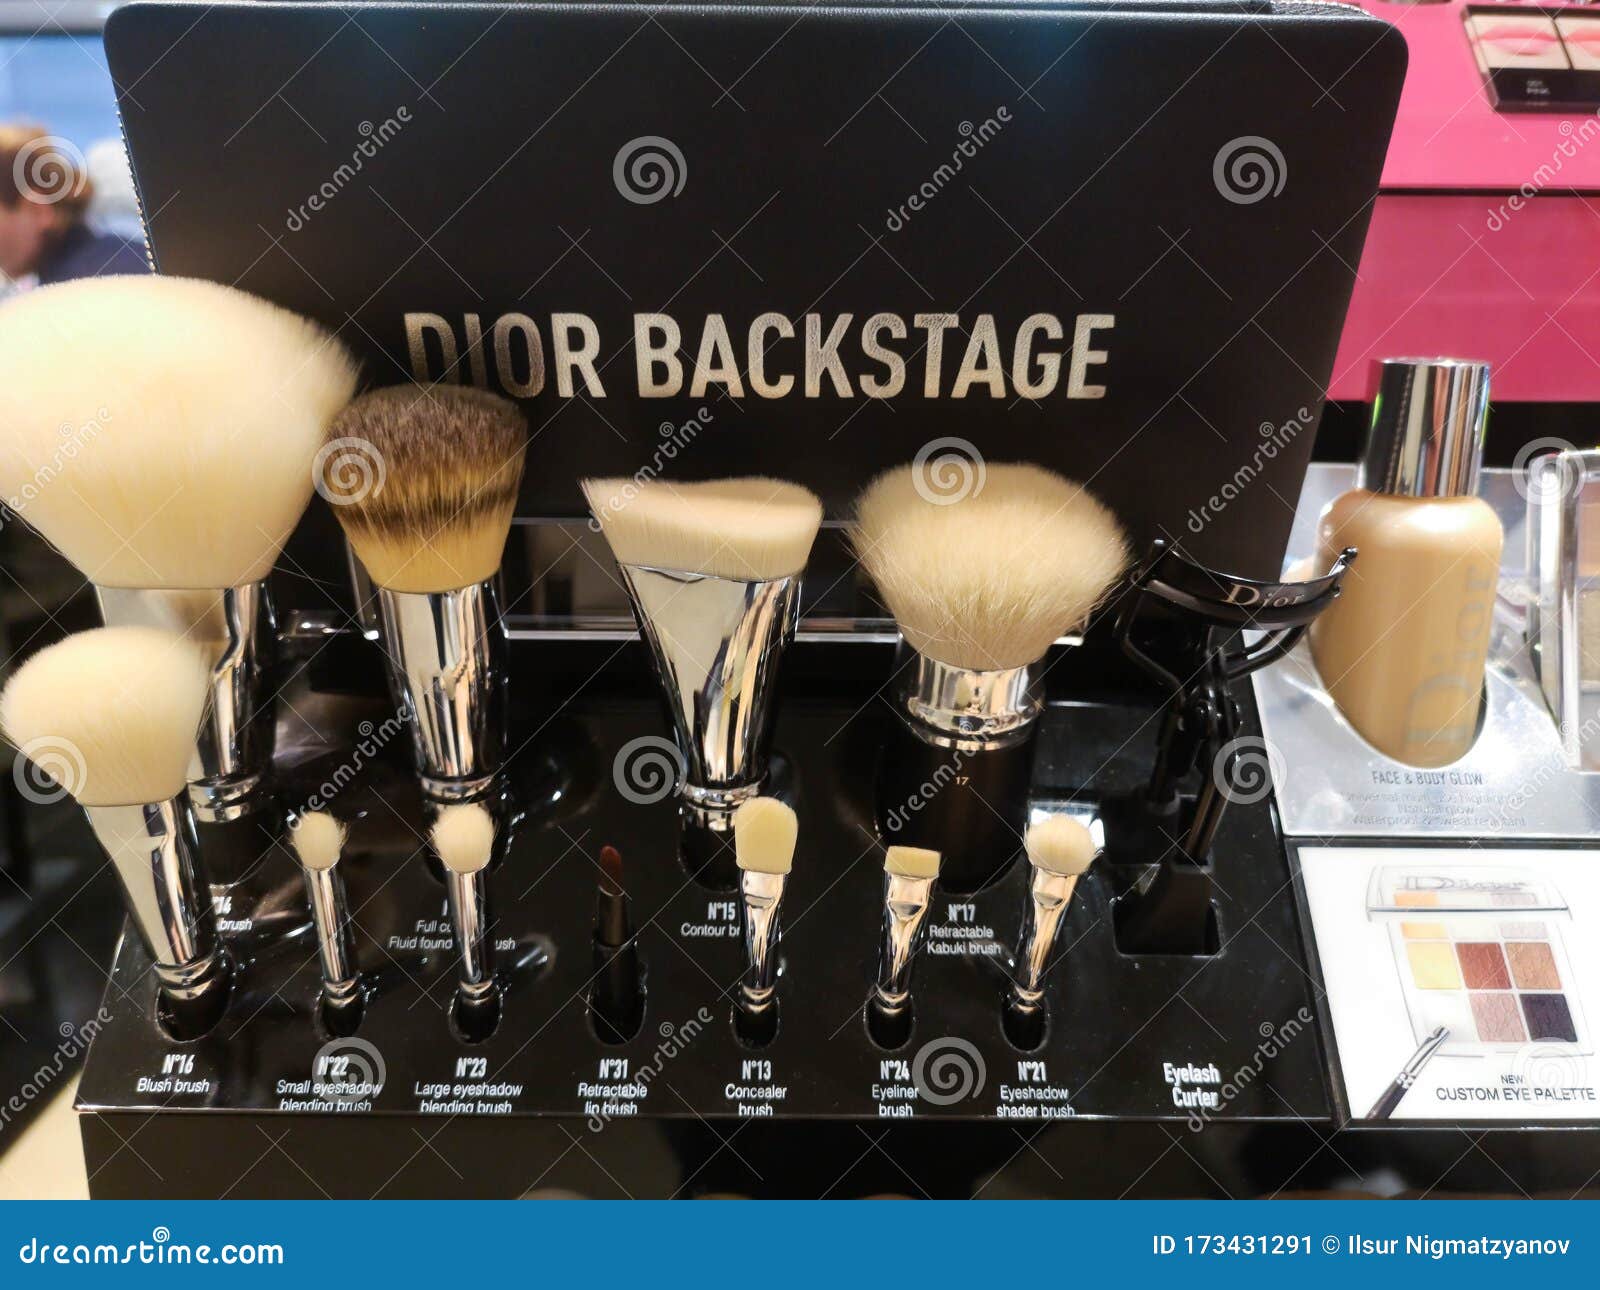 dior backstage brushes